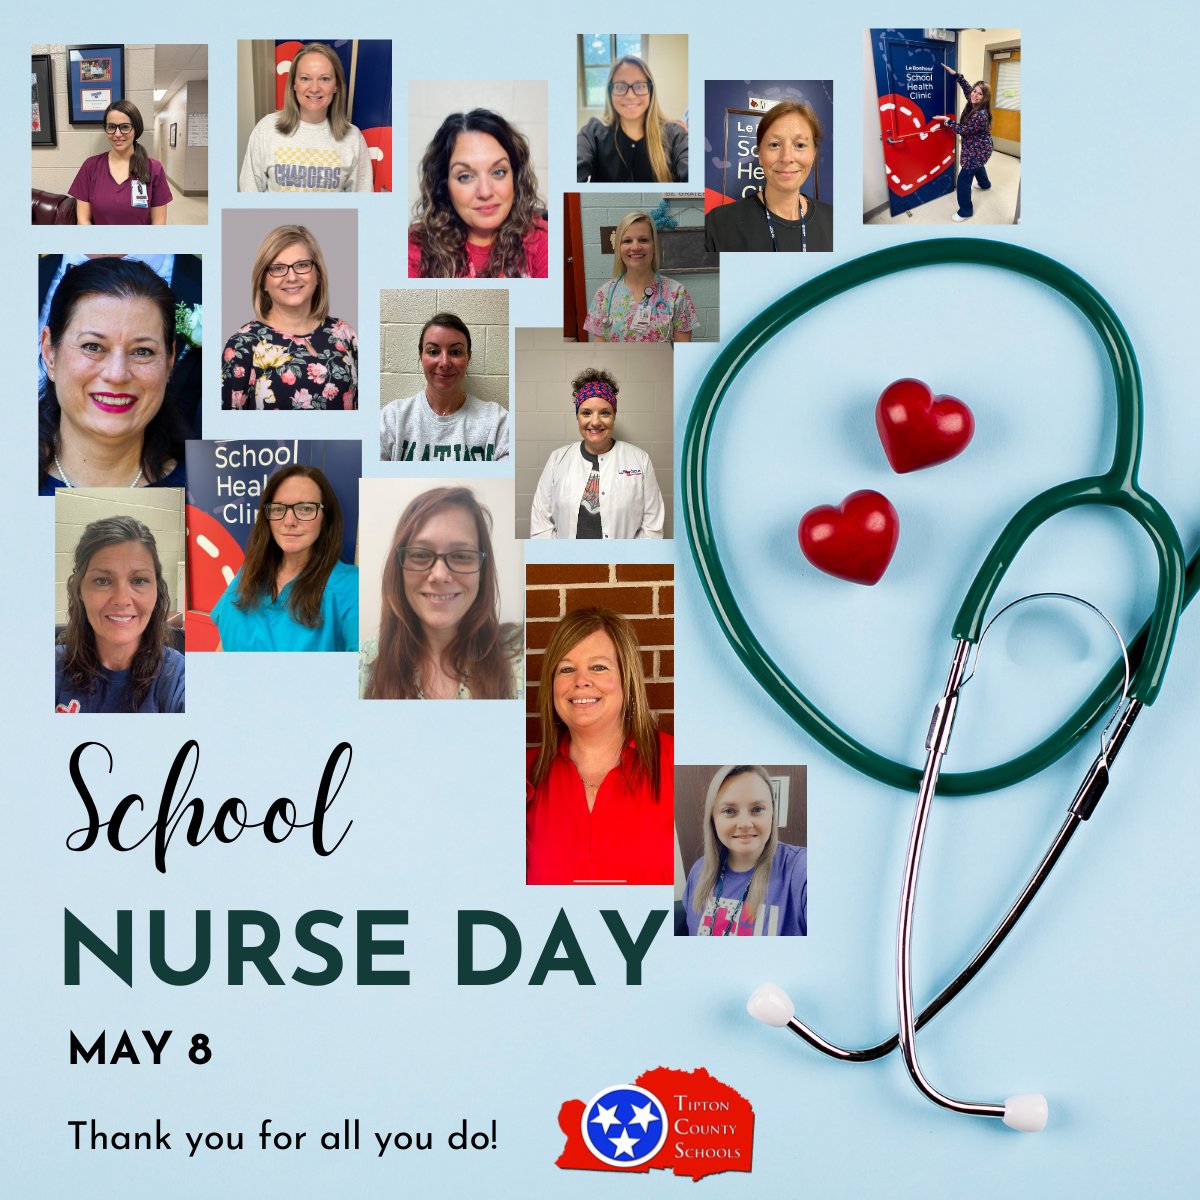 Happy School Nurse Day to these hardworking nurses! We appreciate you👏